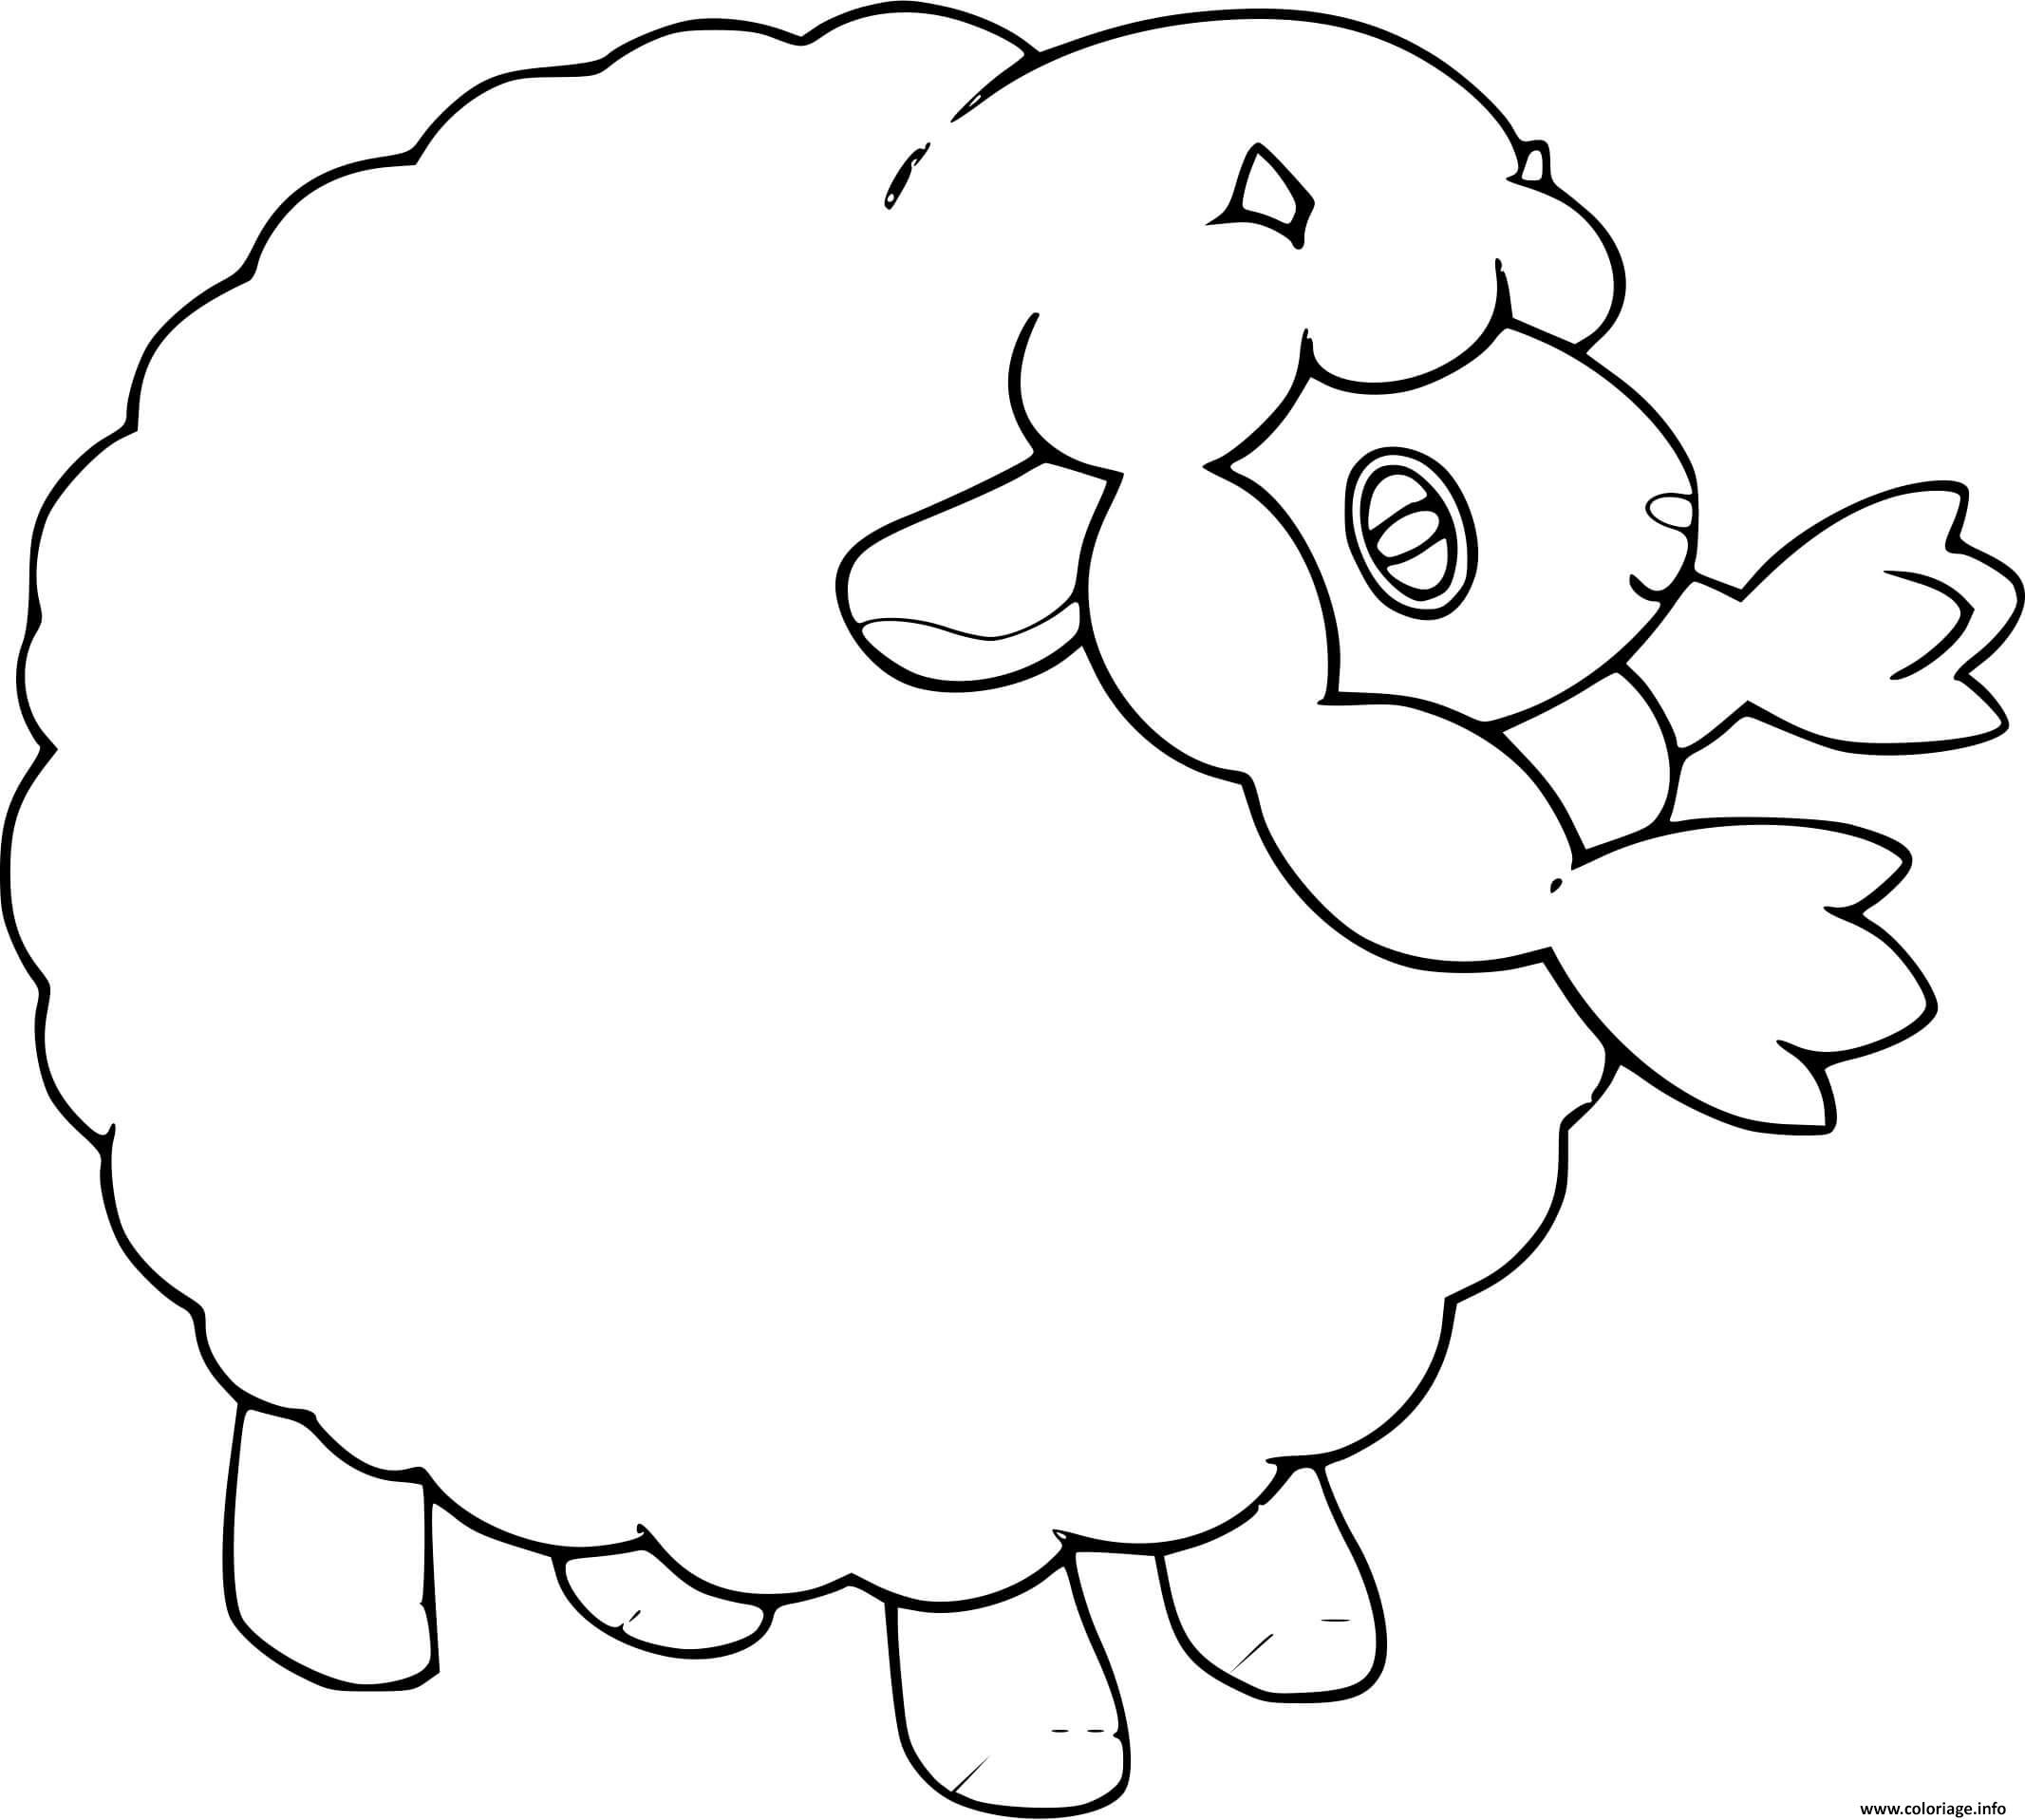 Dessin pokemon mouton Coloriage Gratuit à Imprimer